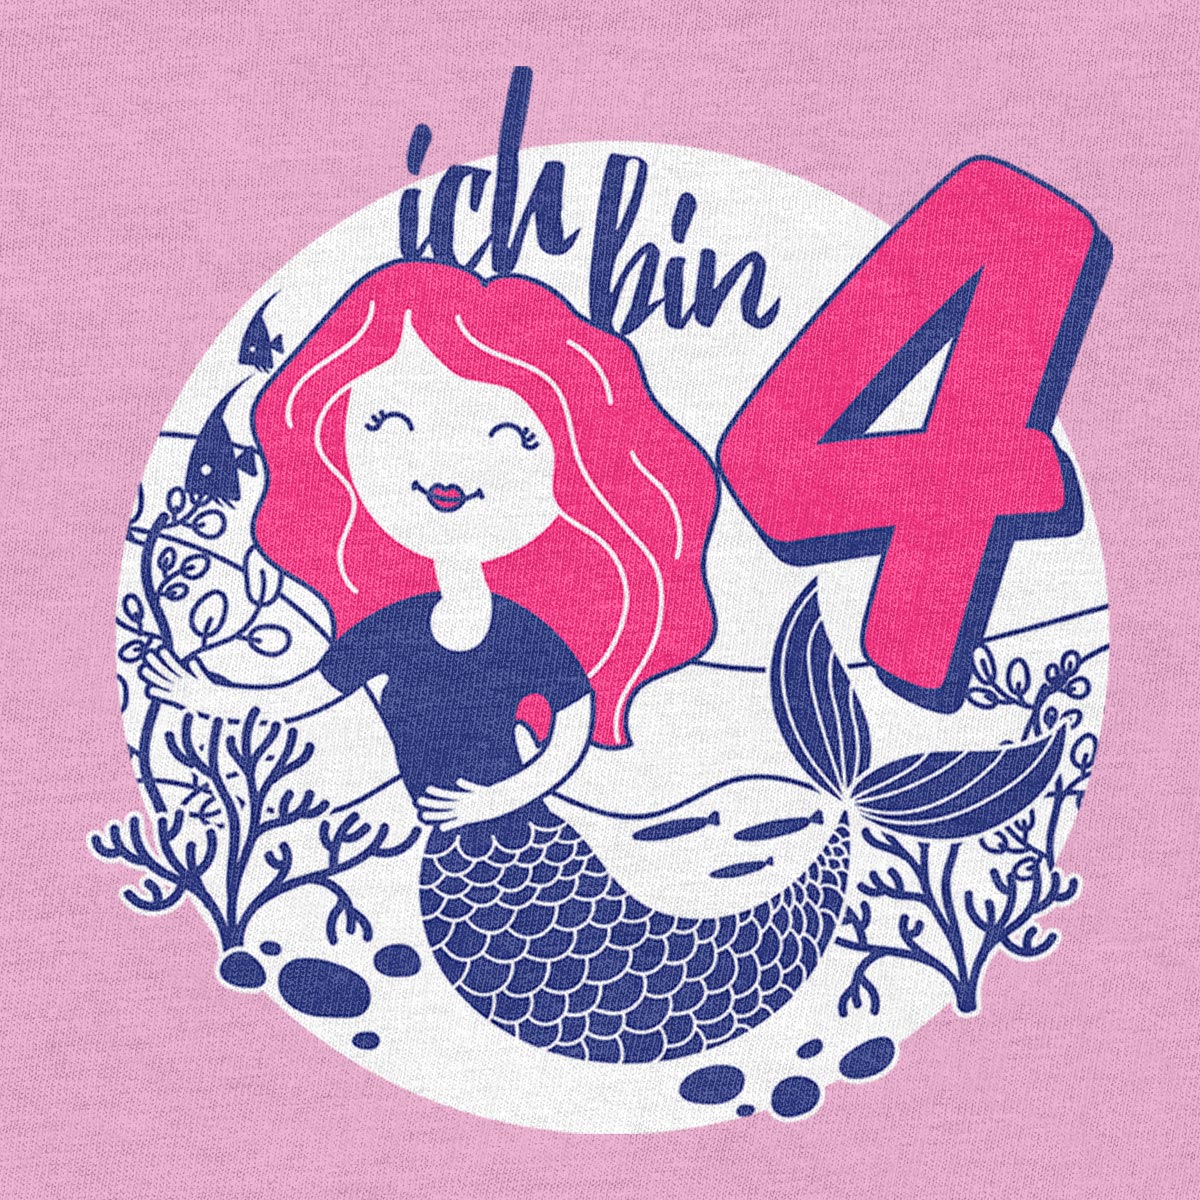 Ich bin 4 Meerjungfrau Korallen Geburtstag Mädchen T-Shirt